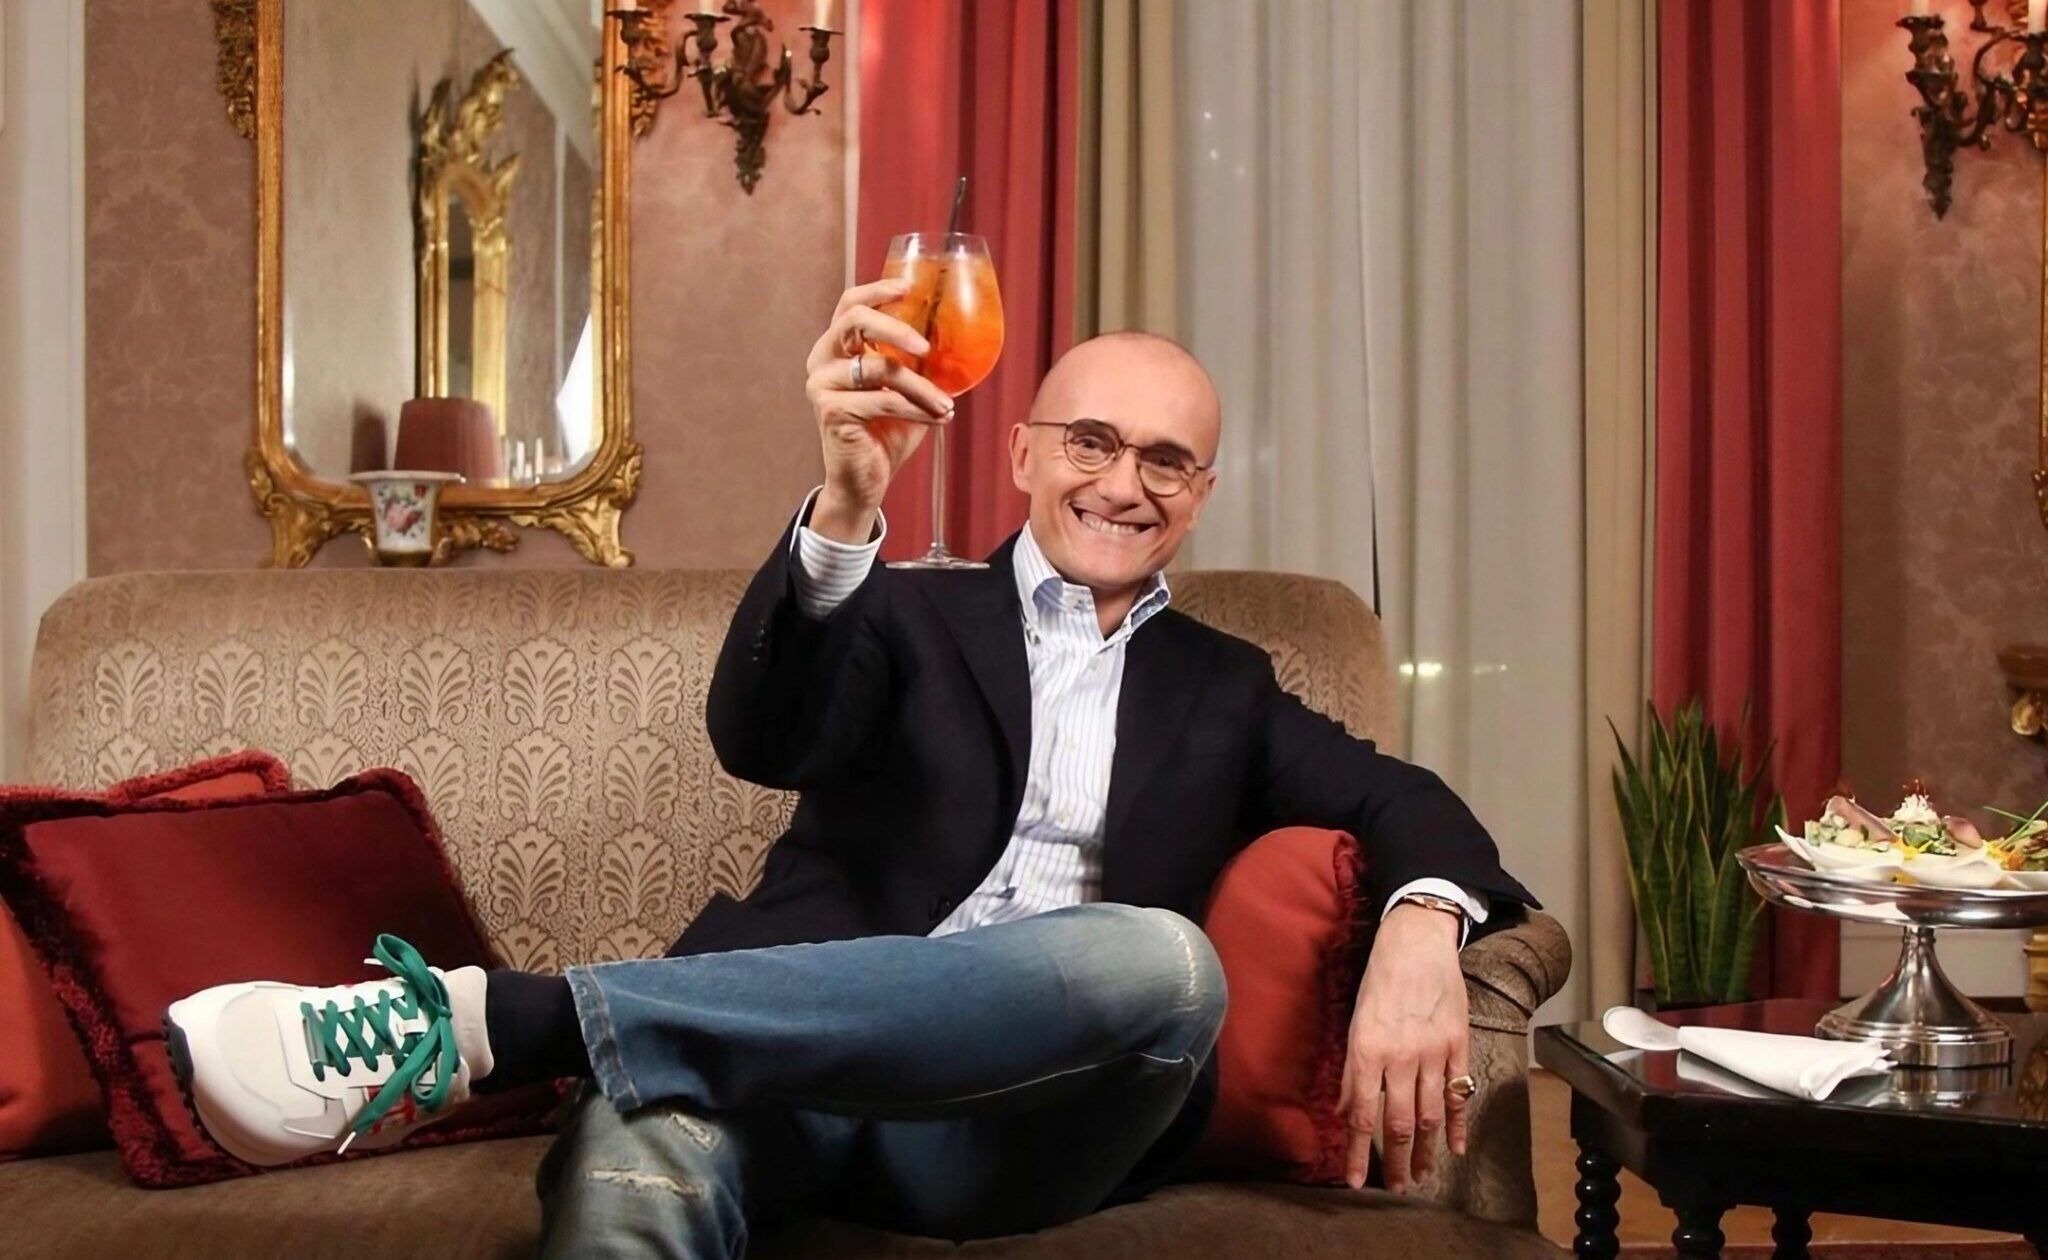 Alfonso Signorini su un divano con un calice di vino in mano